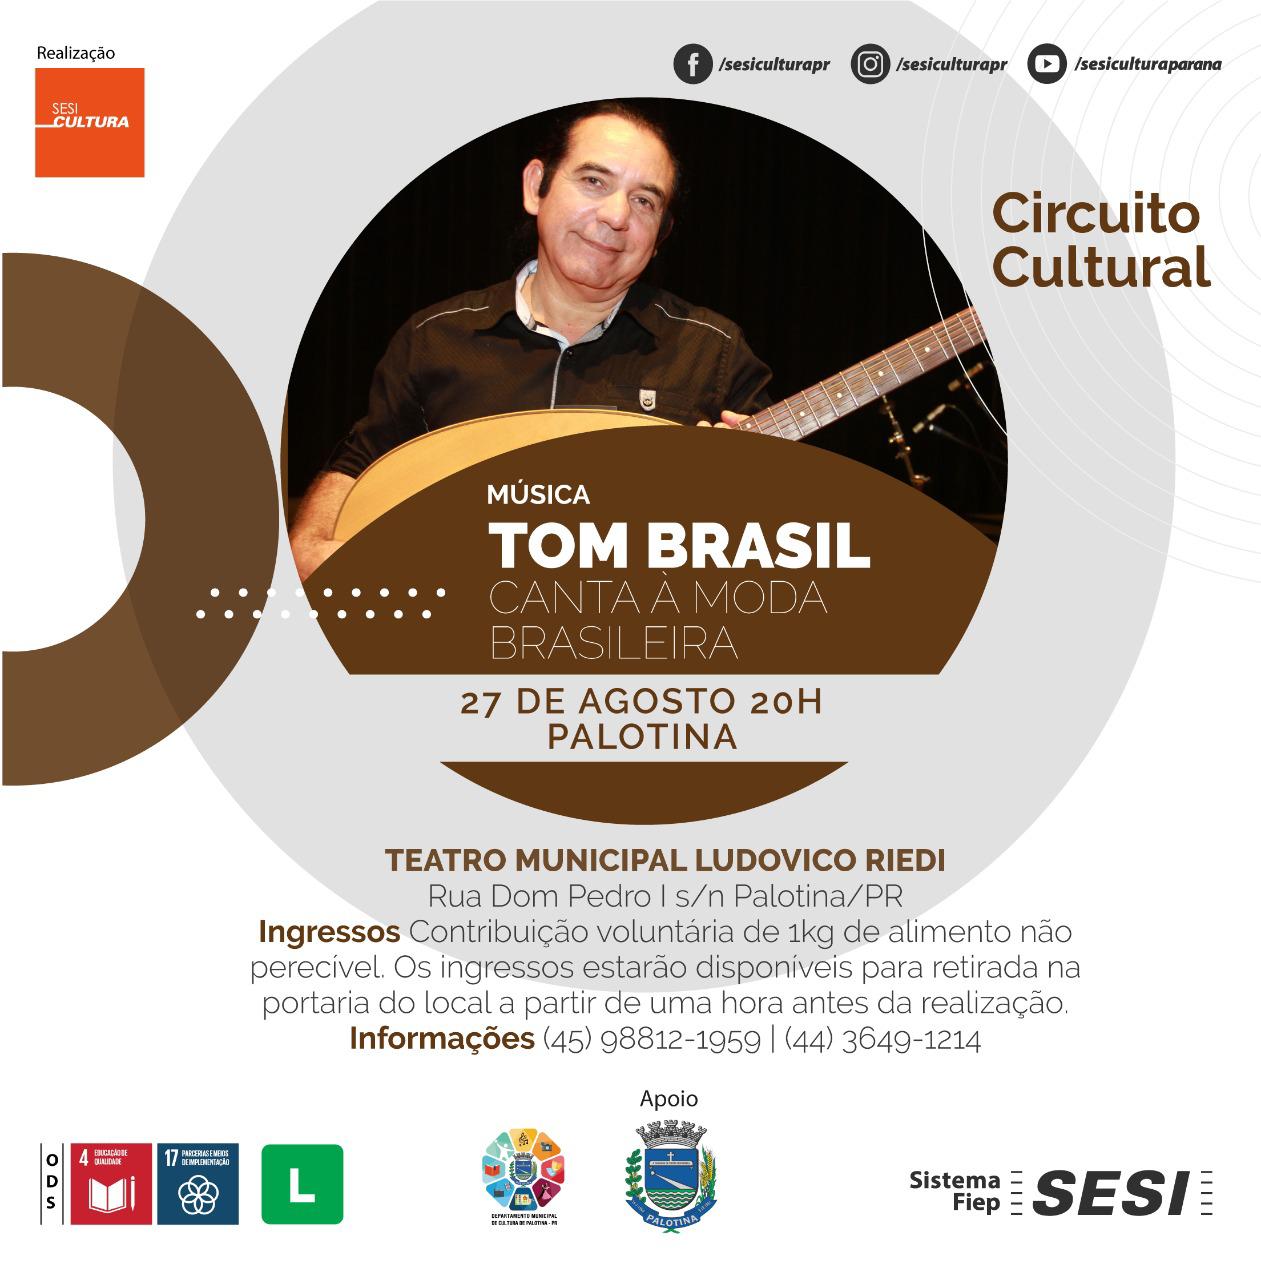 Sesi Cultura PR e Departamento de Cultura de Palotina apresentam: Circuito Cultural Sesi com o grupo Tom Brasil Canta à Moda Brasileira.